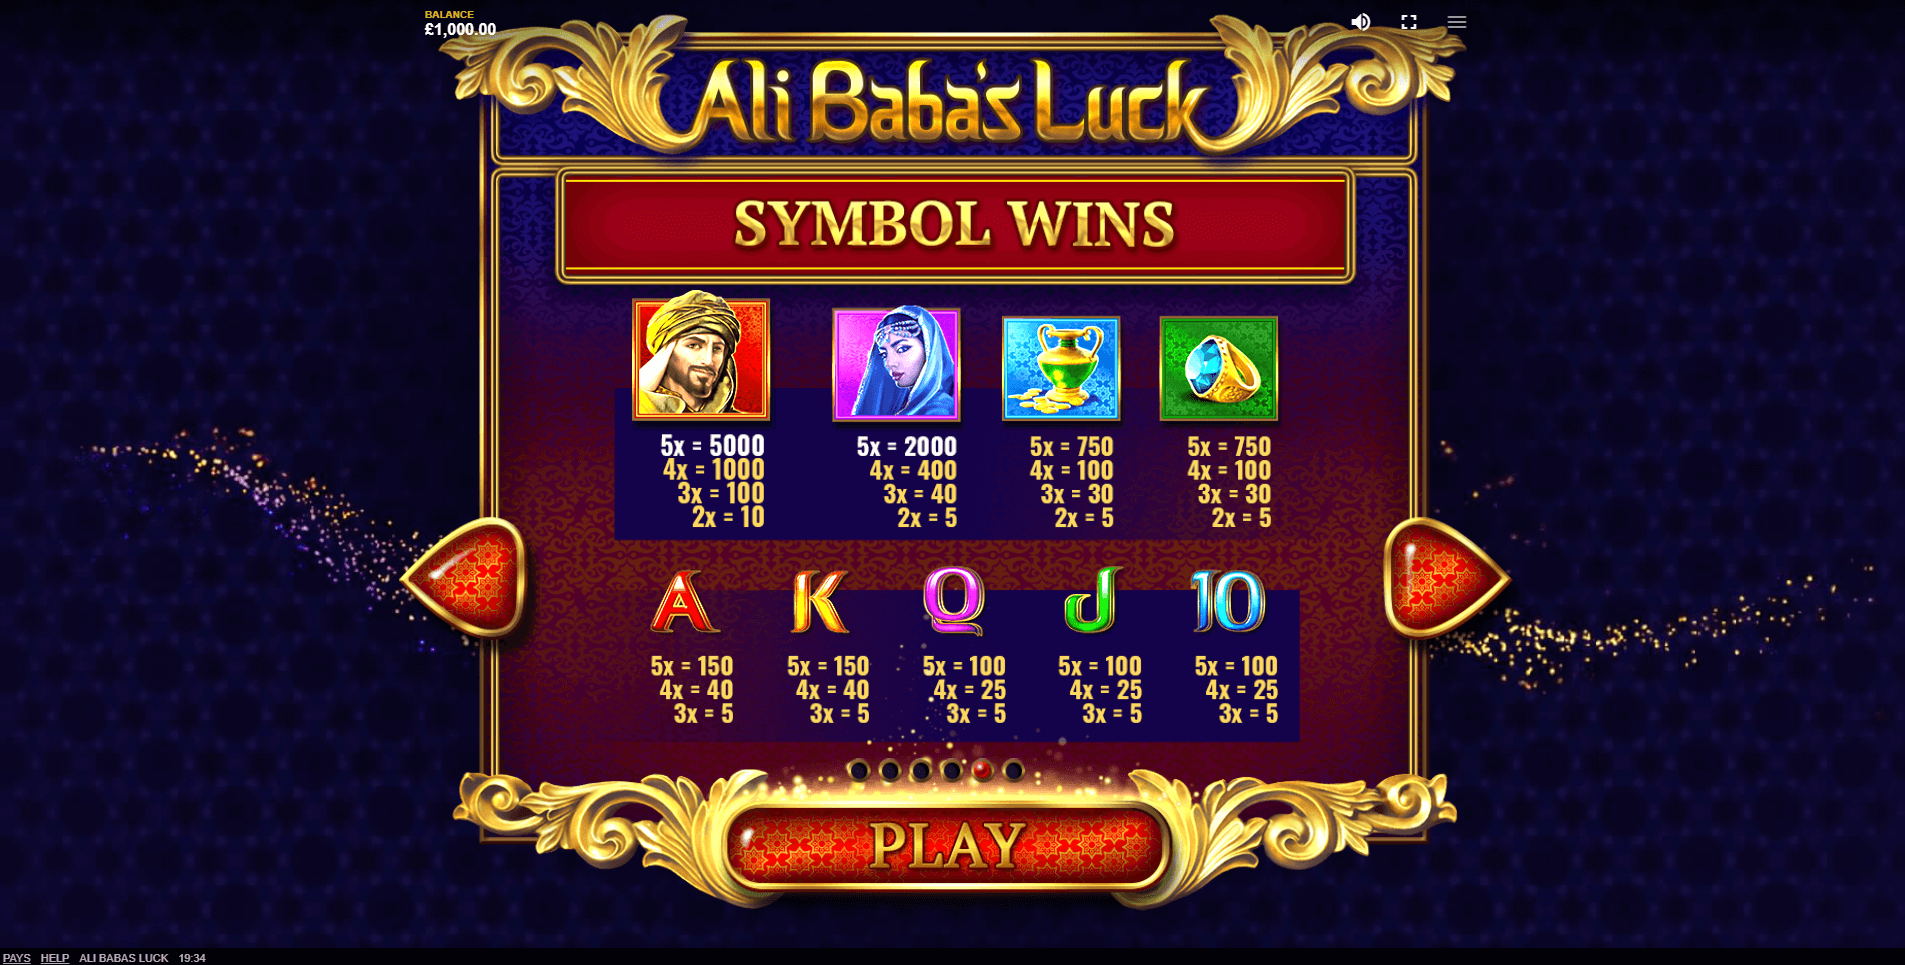 ali babas luck slot machine detail image 3